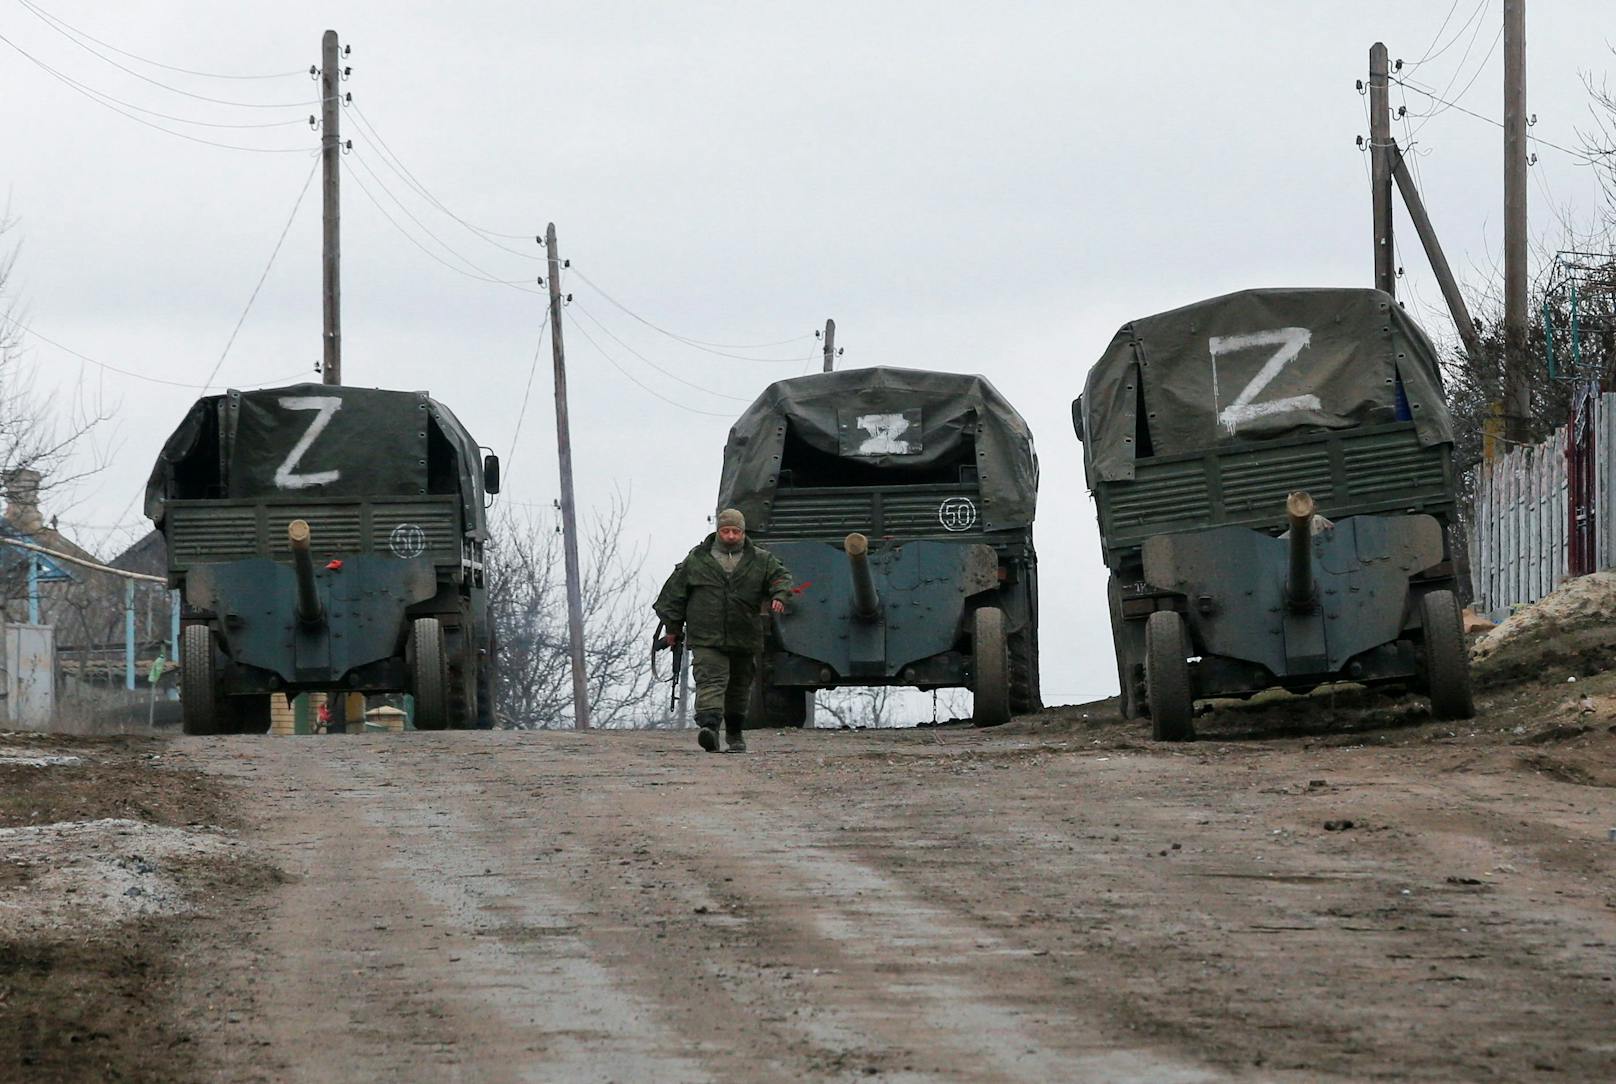 Ganz treffsicher dürfte die Erklärung aber nicht sein. Der zuvor gezeigte "O"-Panzer&nbsp;wurde von der Nachrichtenagentur Reuters in der <a href="https://www.heute.at/s/militaerfahrzeuge-bei-donezk-einmarsch-vermutet-100191648">Donezk-Region</a> – also weit weg von Belarus – gesichtet.